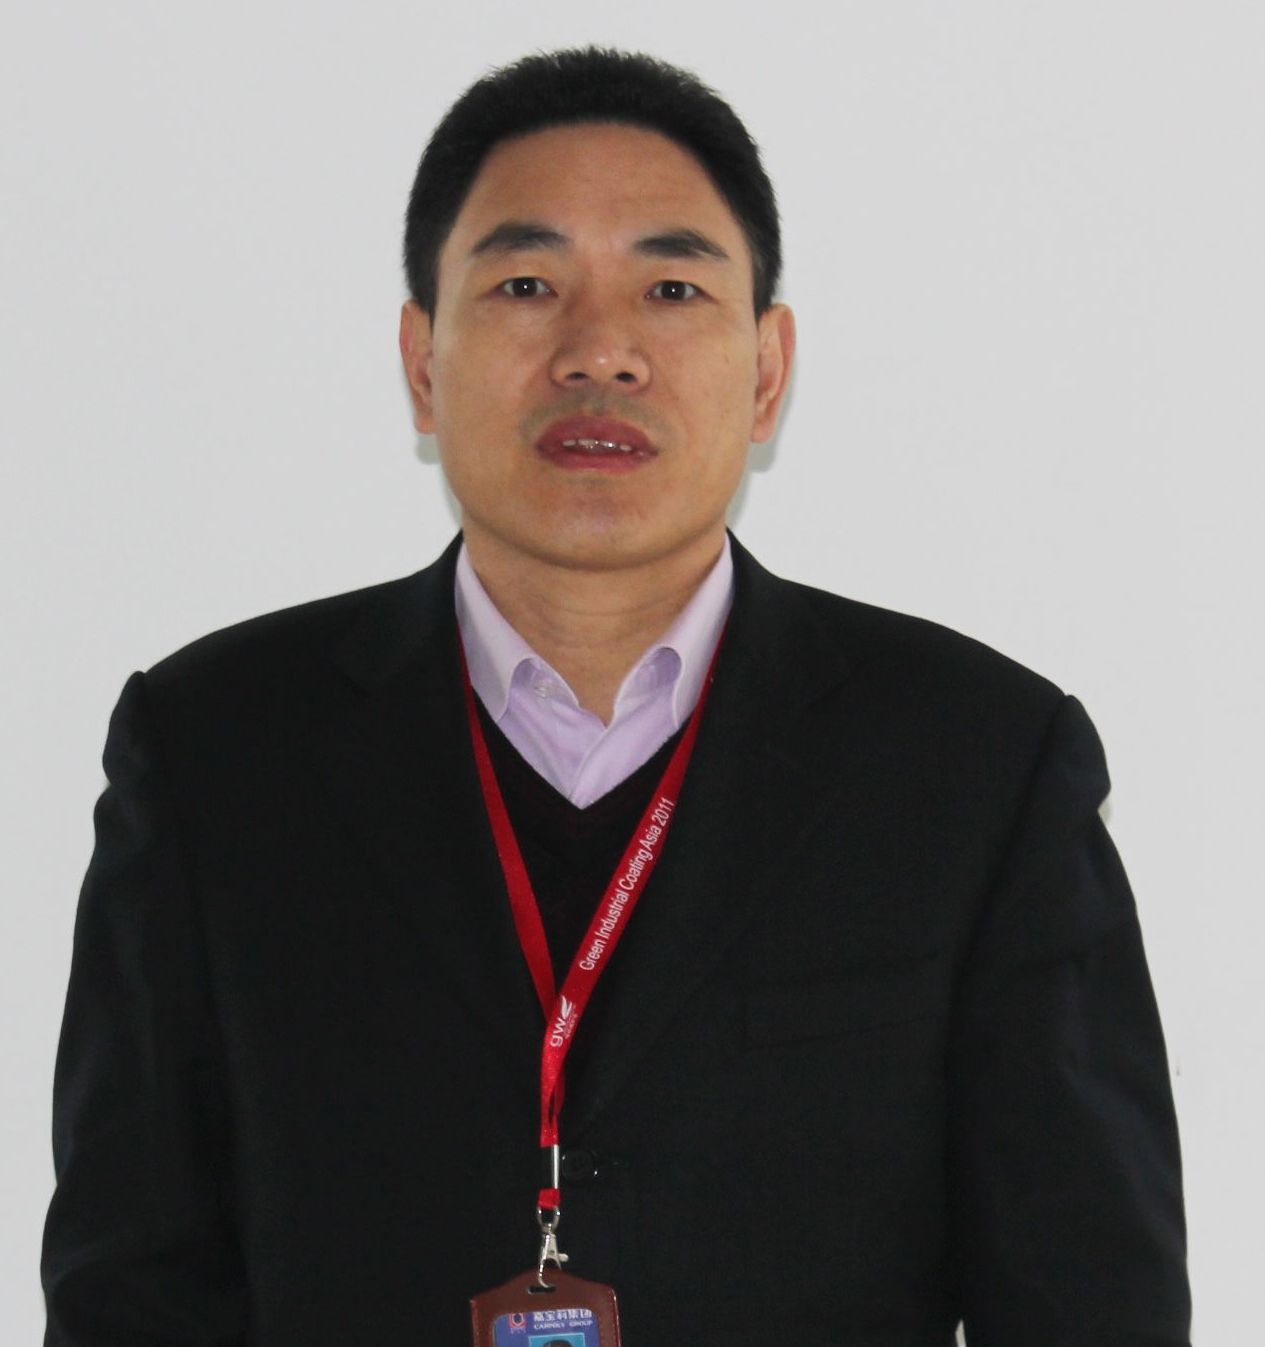 Mr. Gaofeng Zhang